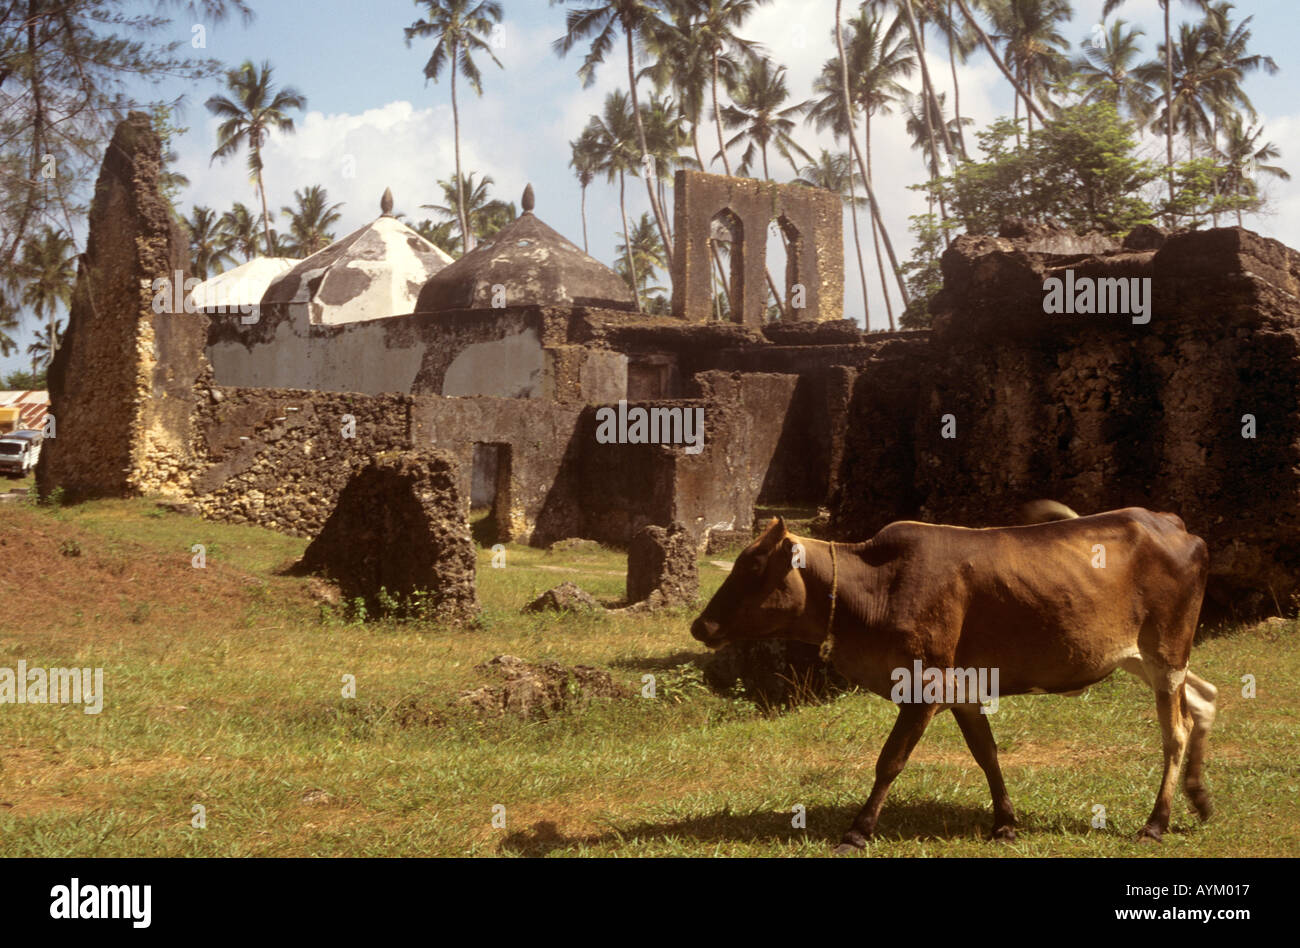 Una mucca lambisce in motivi di Maruhubi Palace costruito nel 1882 per Sultan Barghash's Harem nell ovest dell isola di Zanzibar, Tanzania Foto Stock